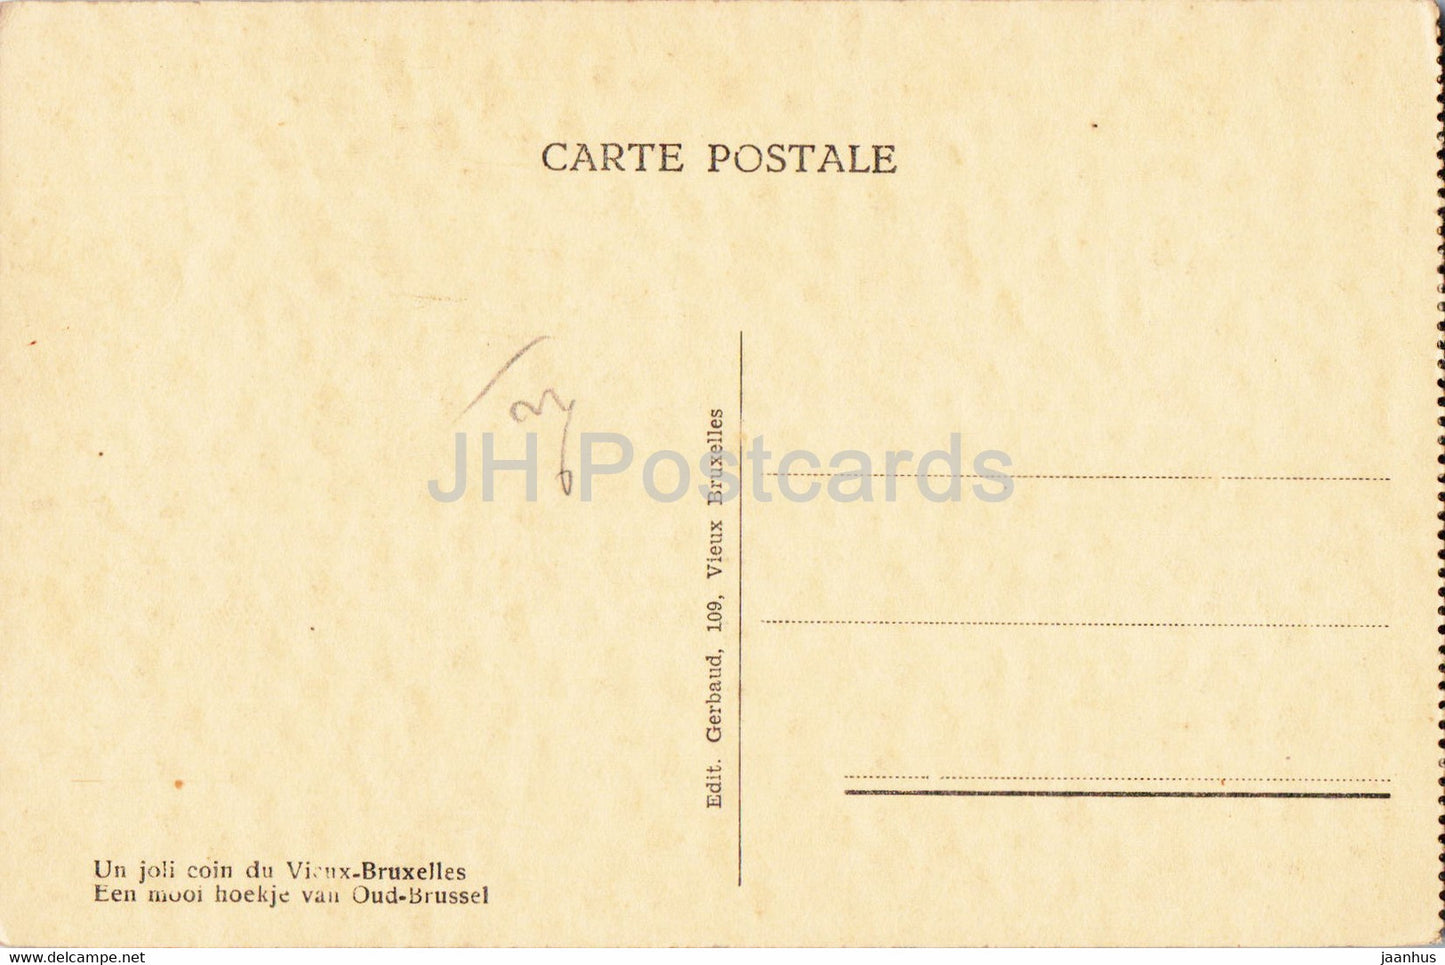 Bruxelles - Bruxelles - Exposition 1935 - Un joli coin du Vieux Bruxelles - carte postale ancienne - Belgique - inutilisée